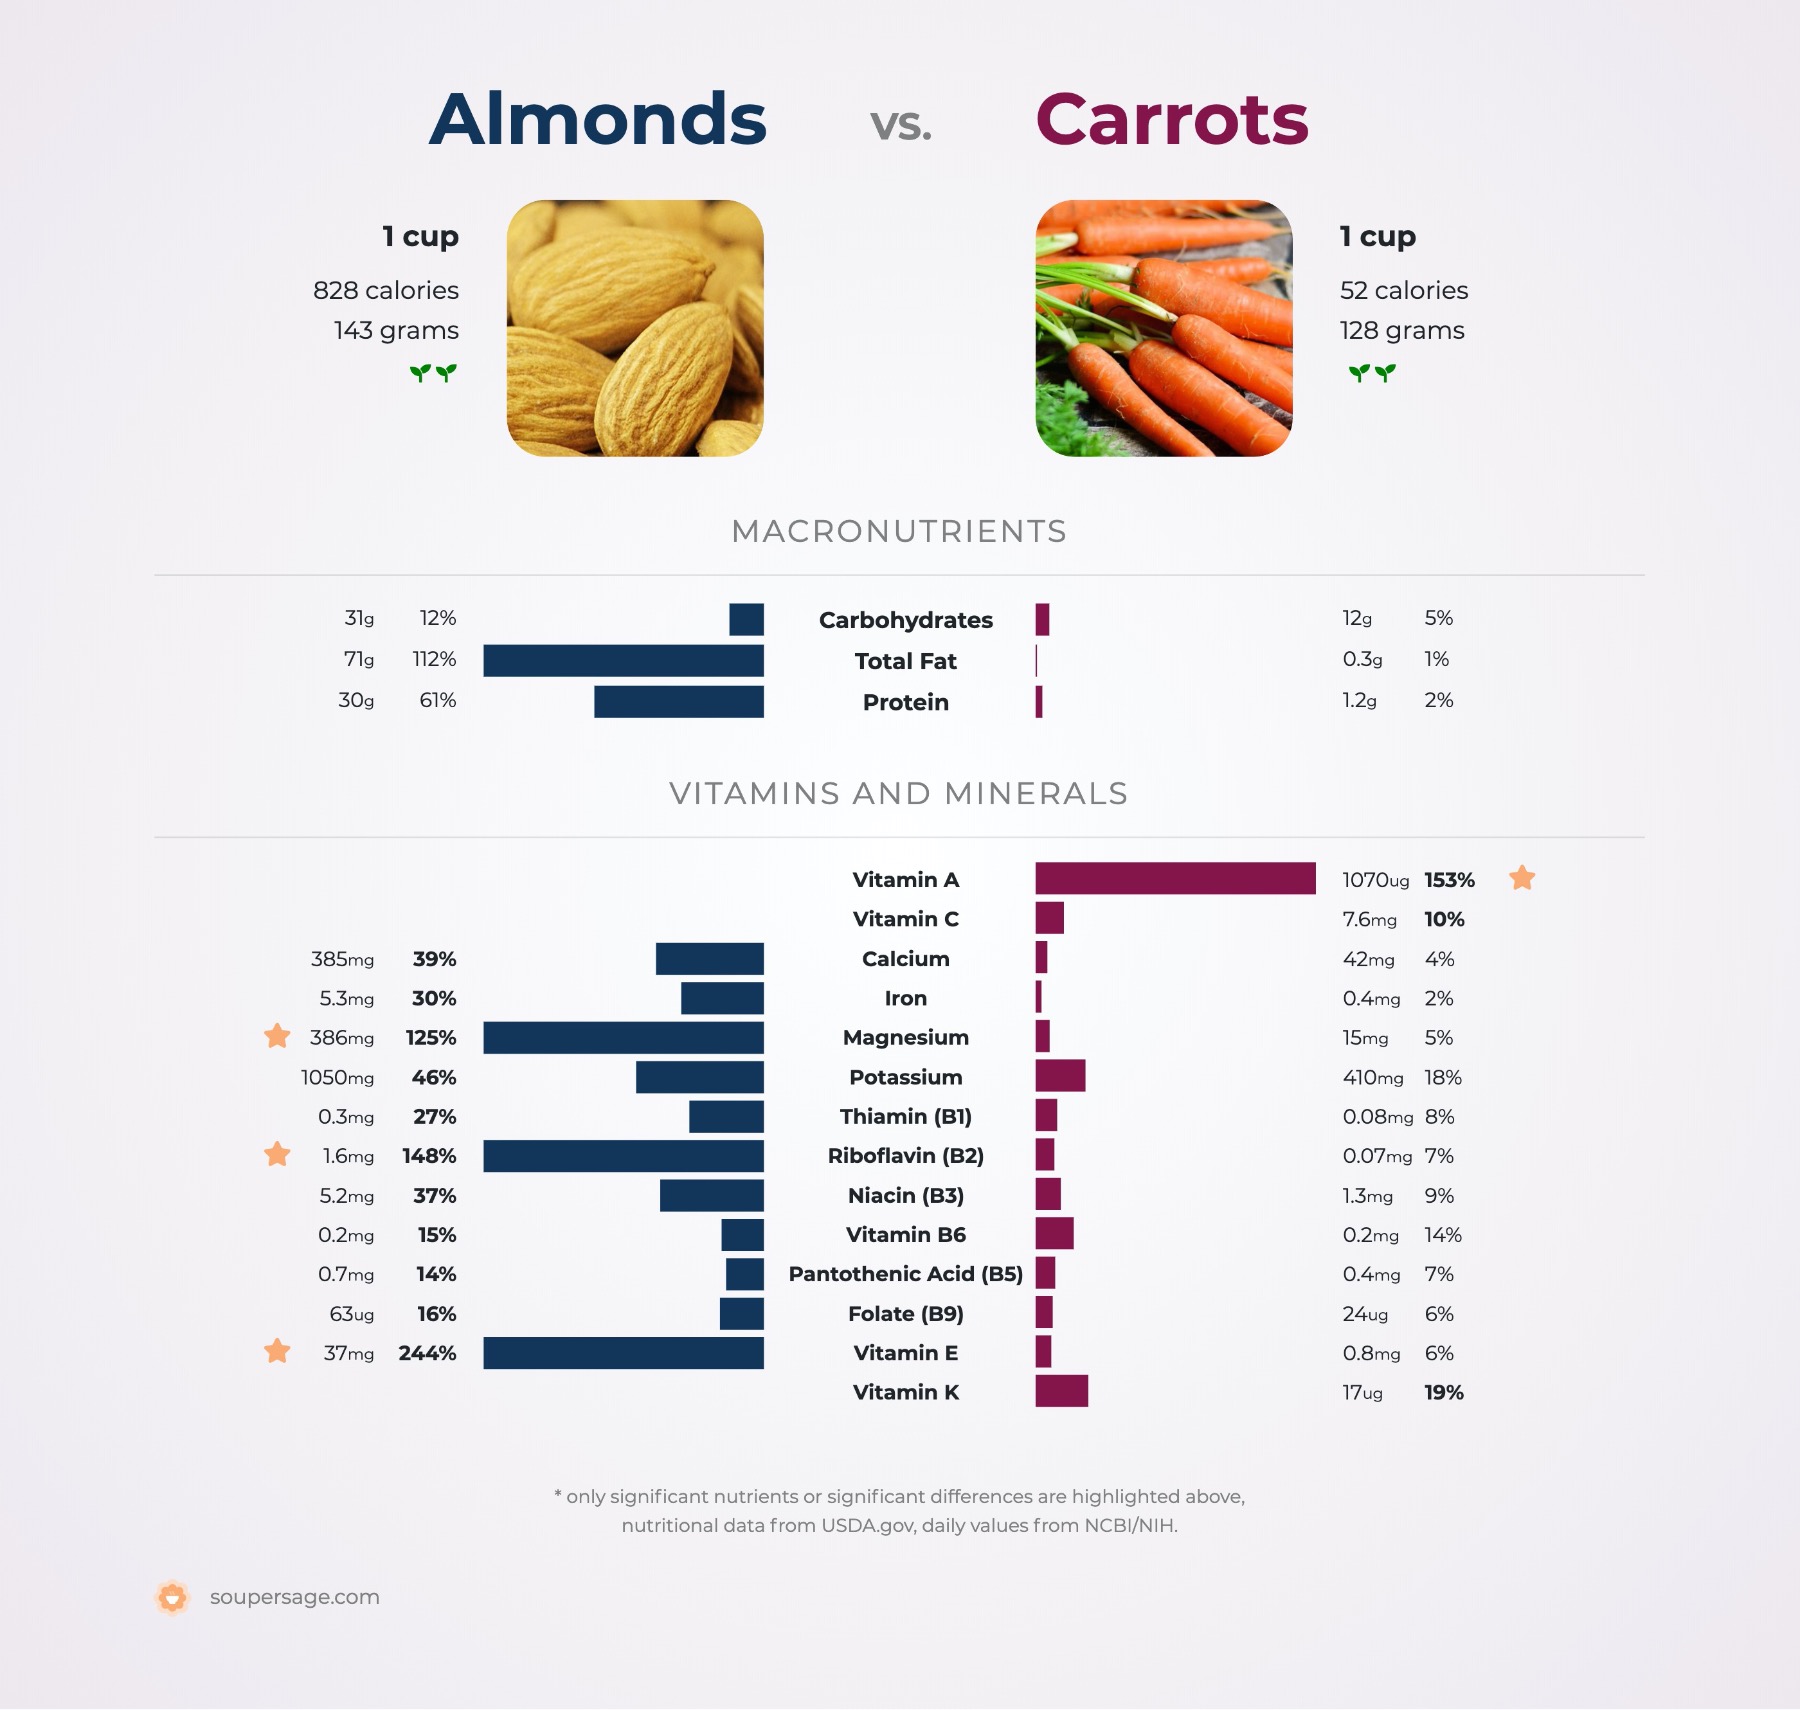 nutrition comparison of almonds vs. carrots